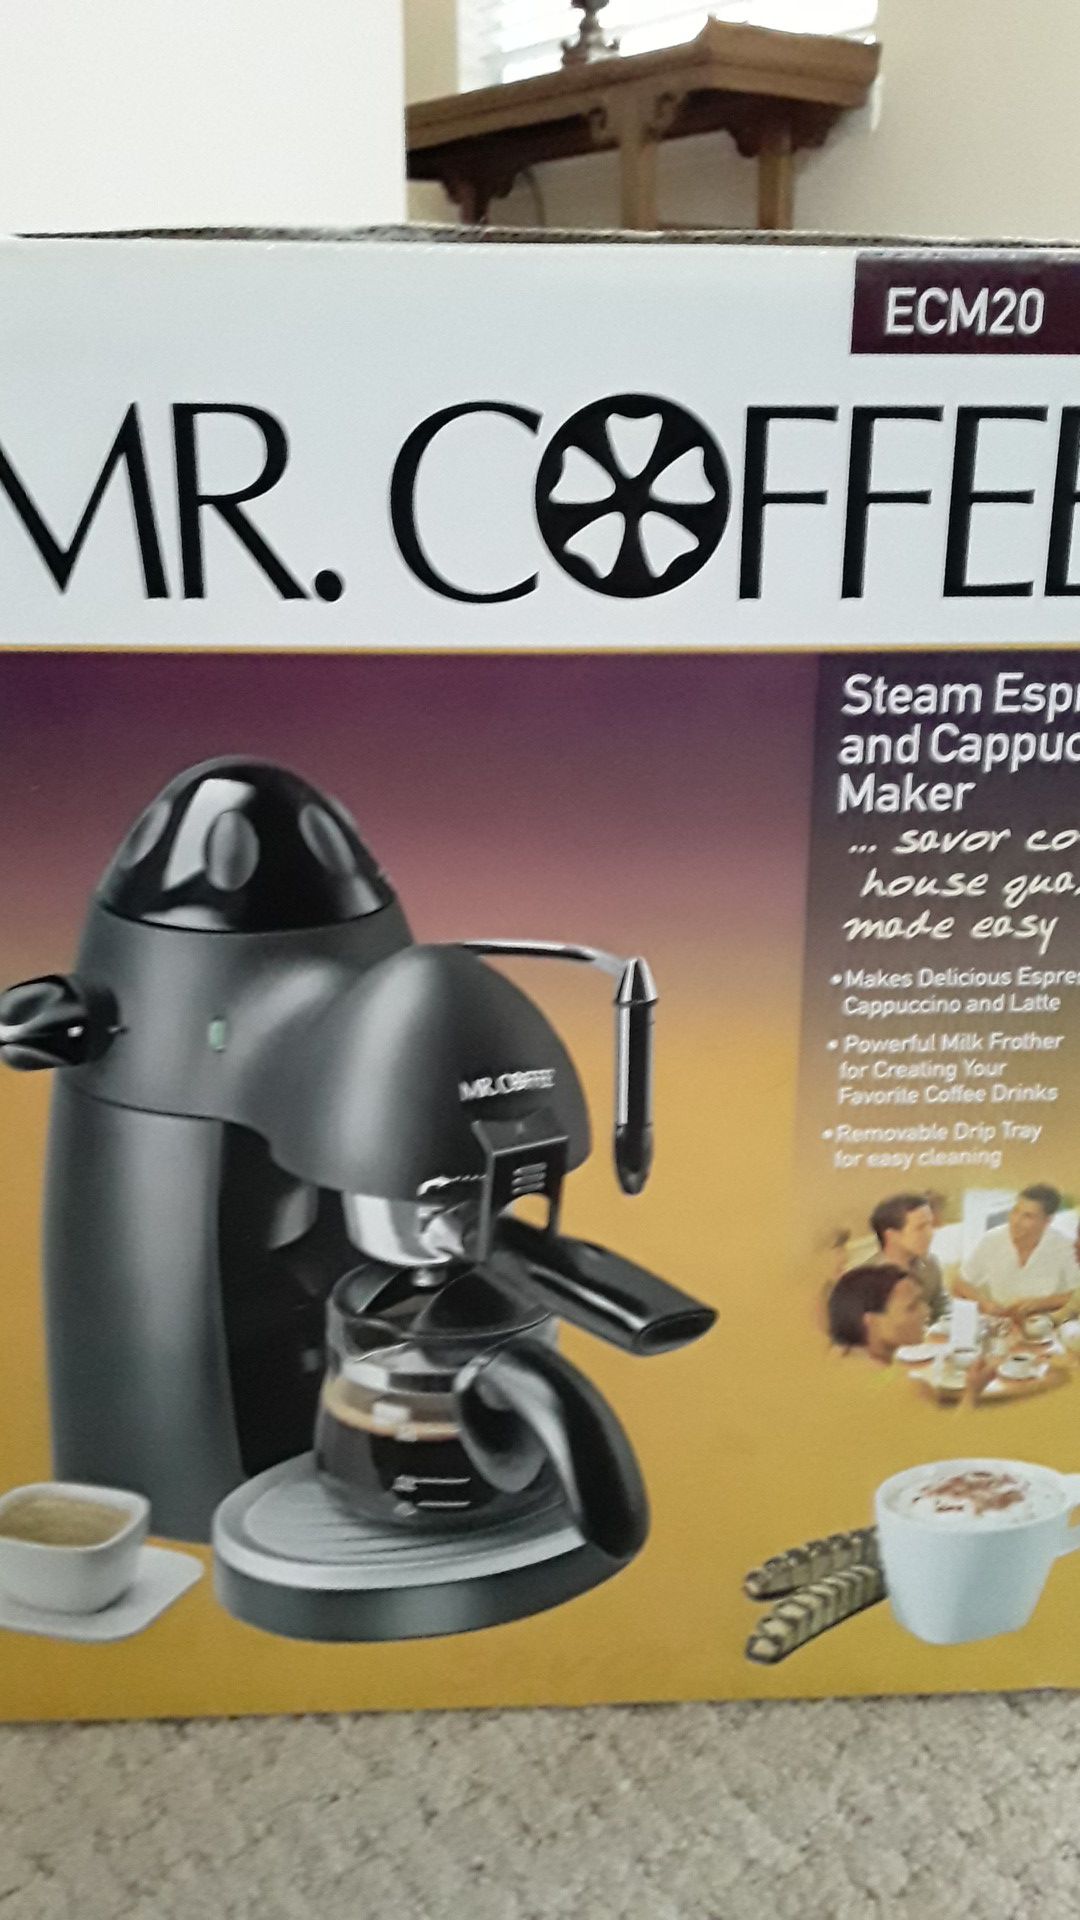 Mr. Coffee steam espresso & cappuccino maker.